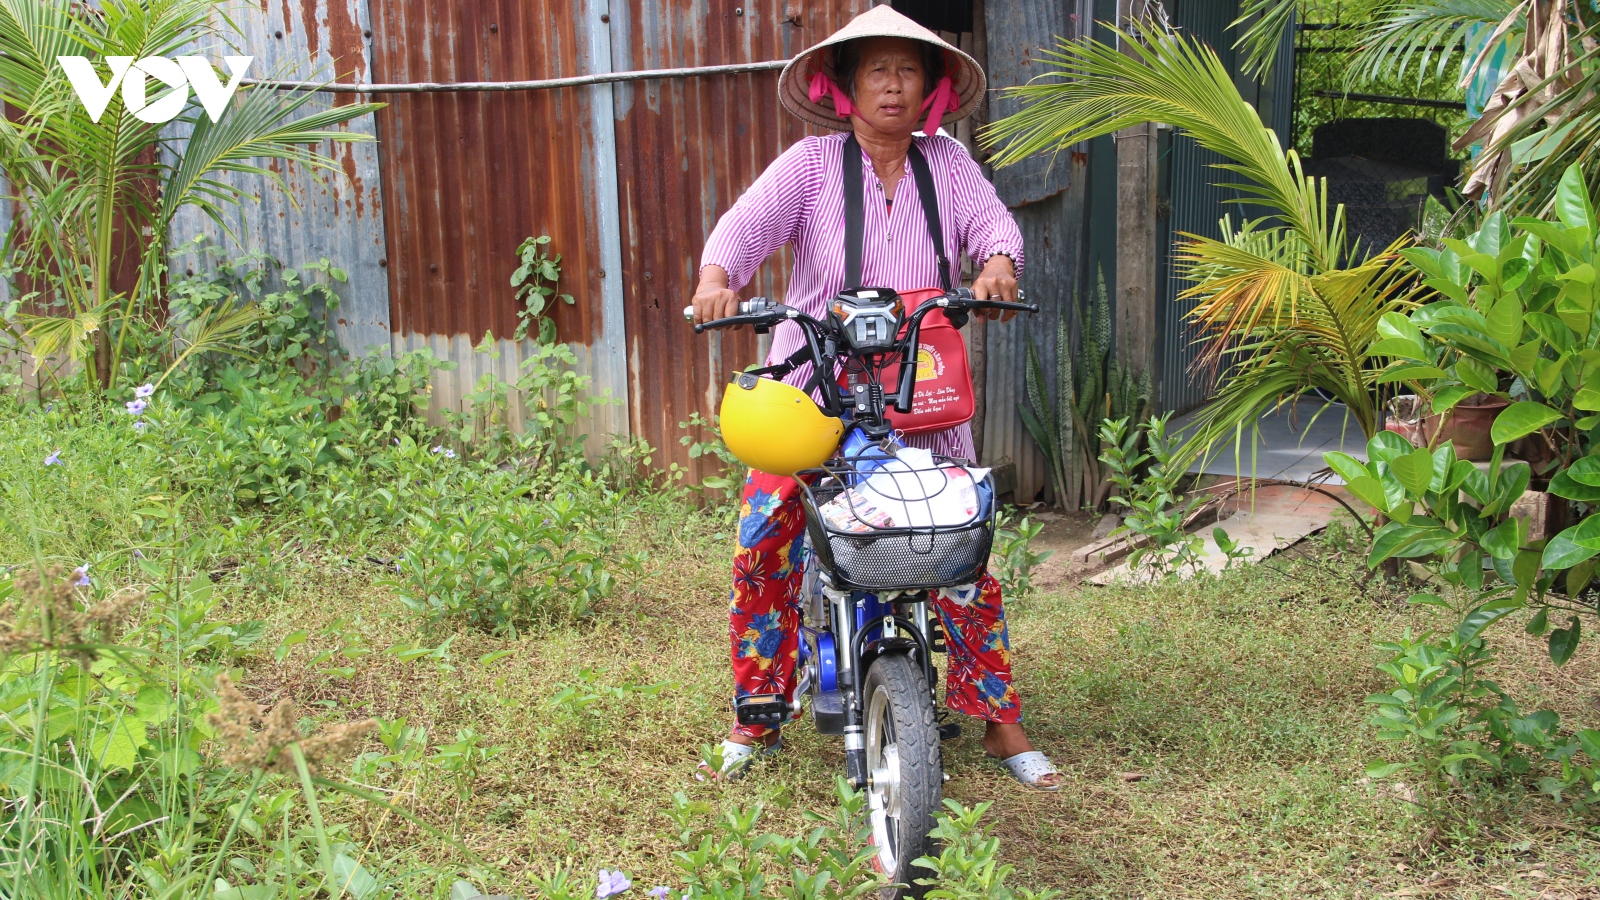 Sóc Trăng hỗ trợ chuyển đổi ngành nghề, tạo sinh kế cho đồng bào dân tộc Khmer